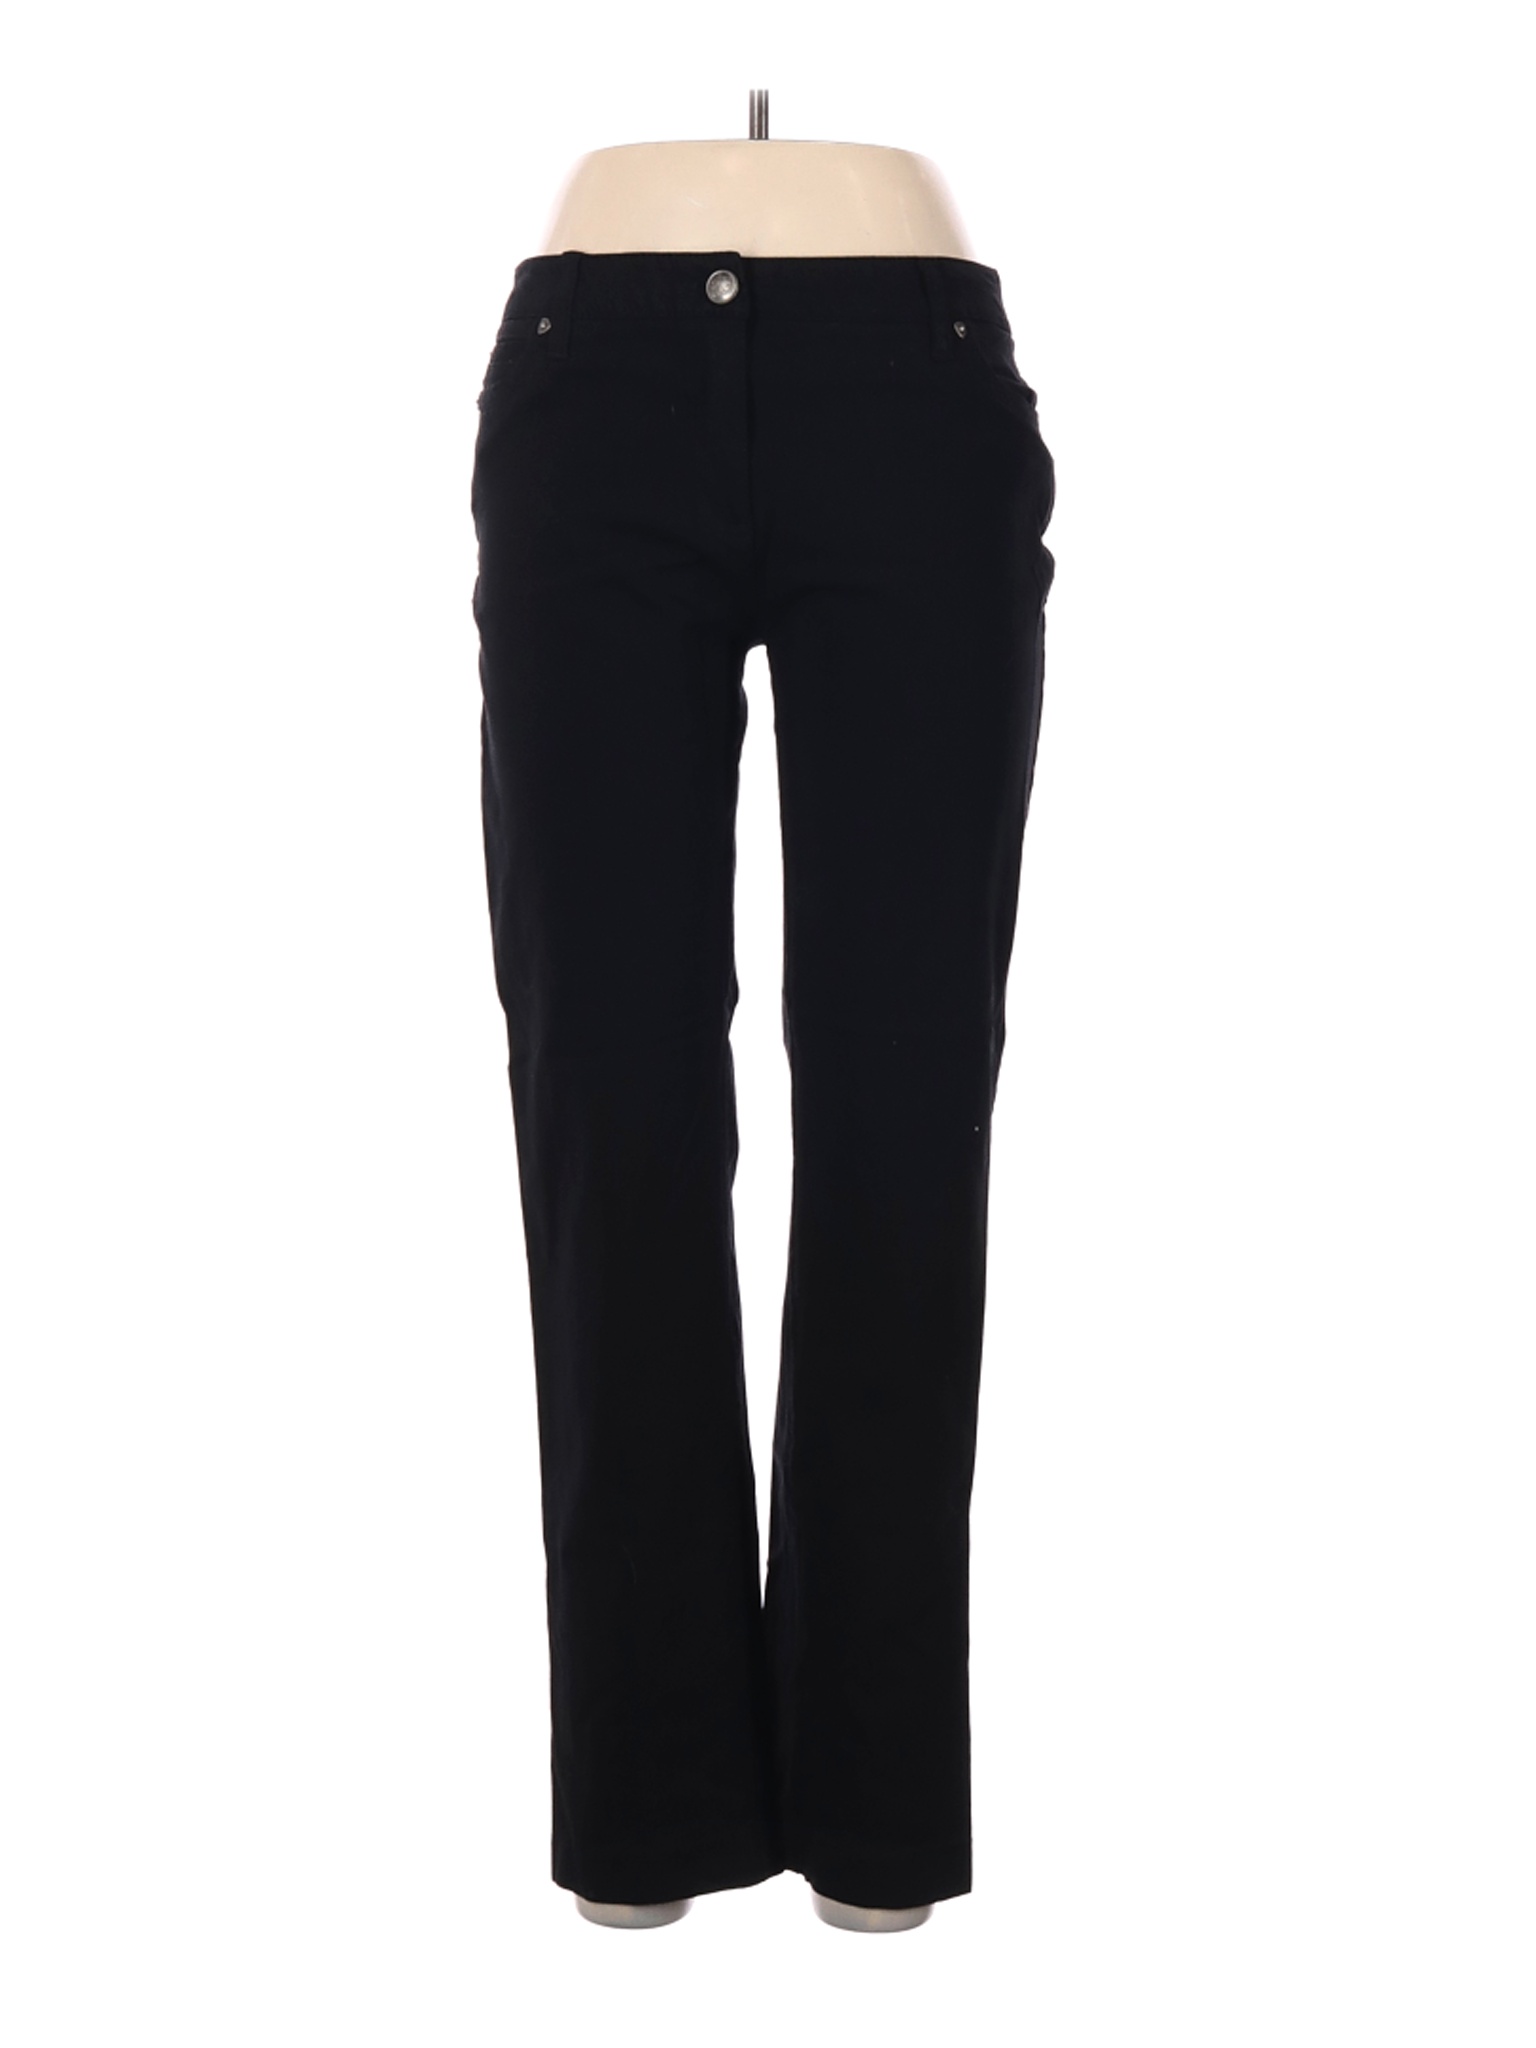 Zac & Rachel Women Black Jeans 12 | eBay